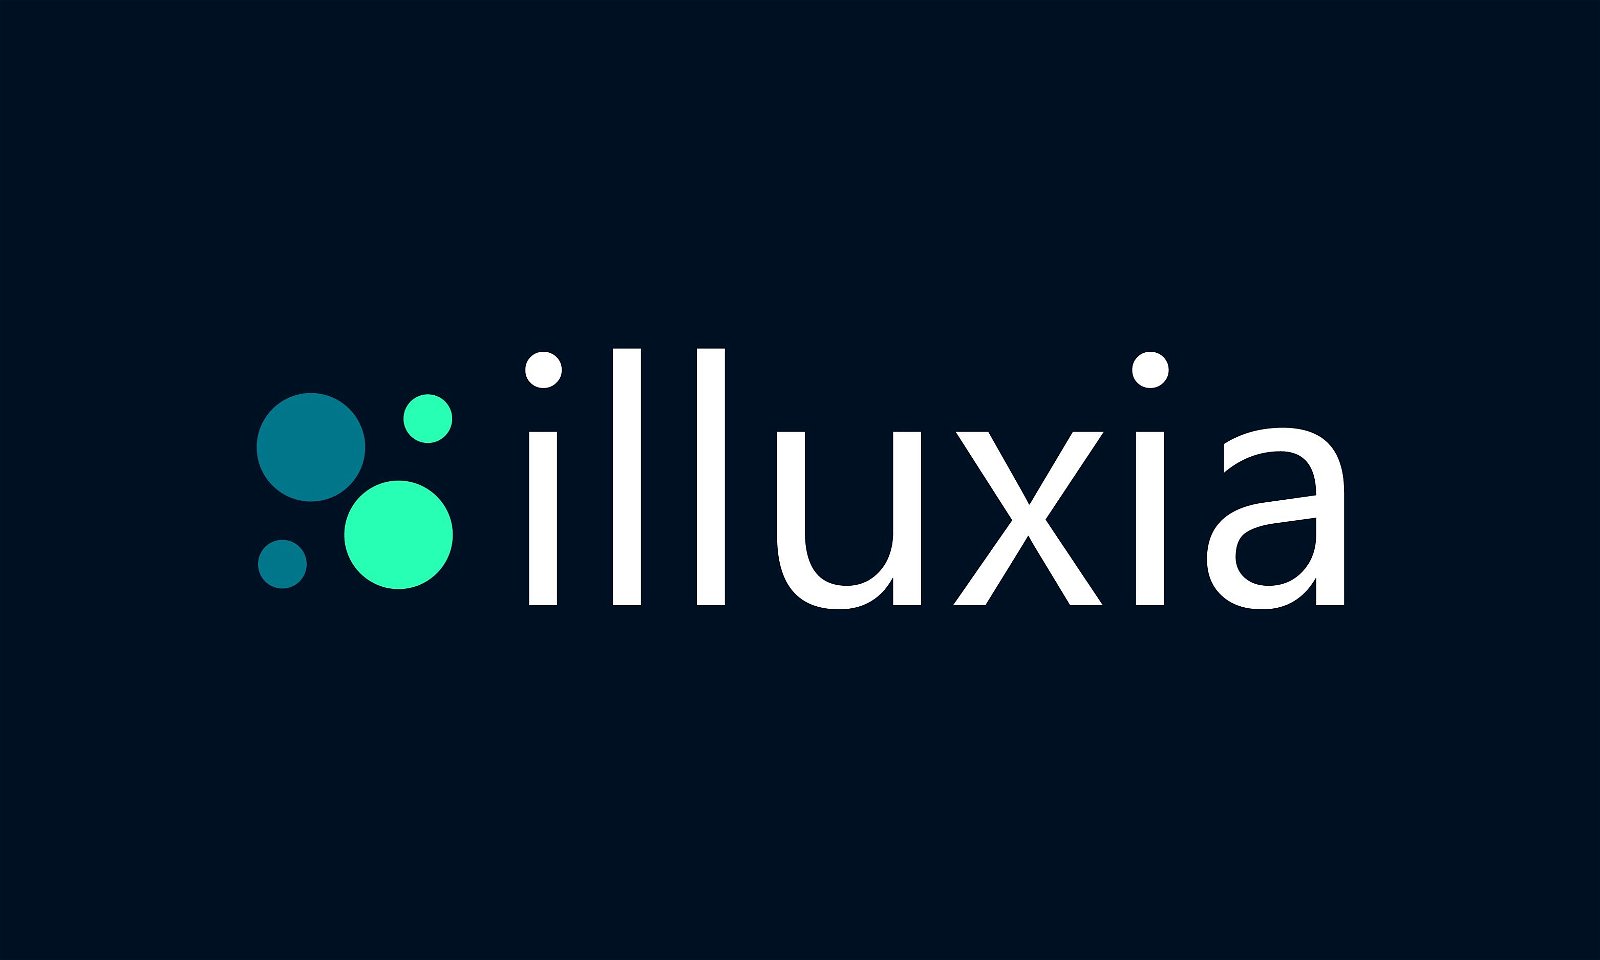 Illuxia.com - Creative brandable domain for sale